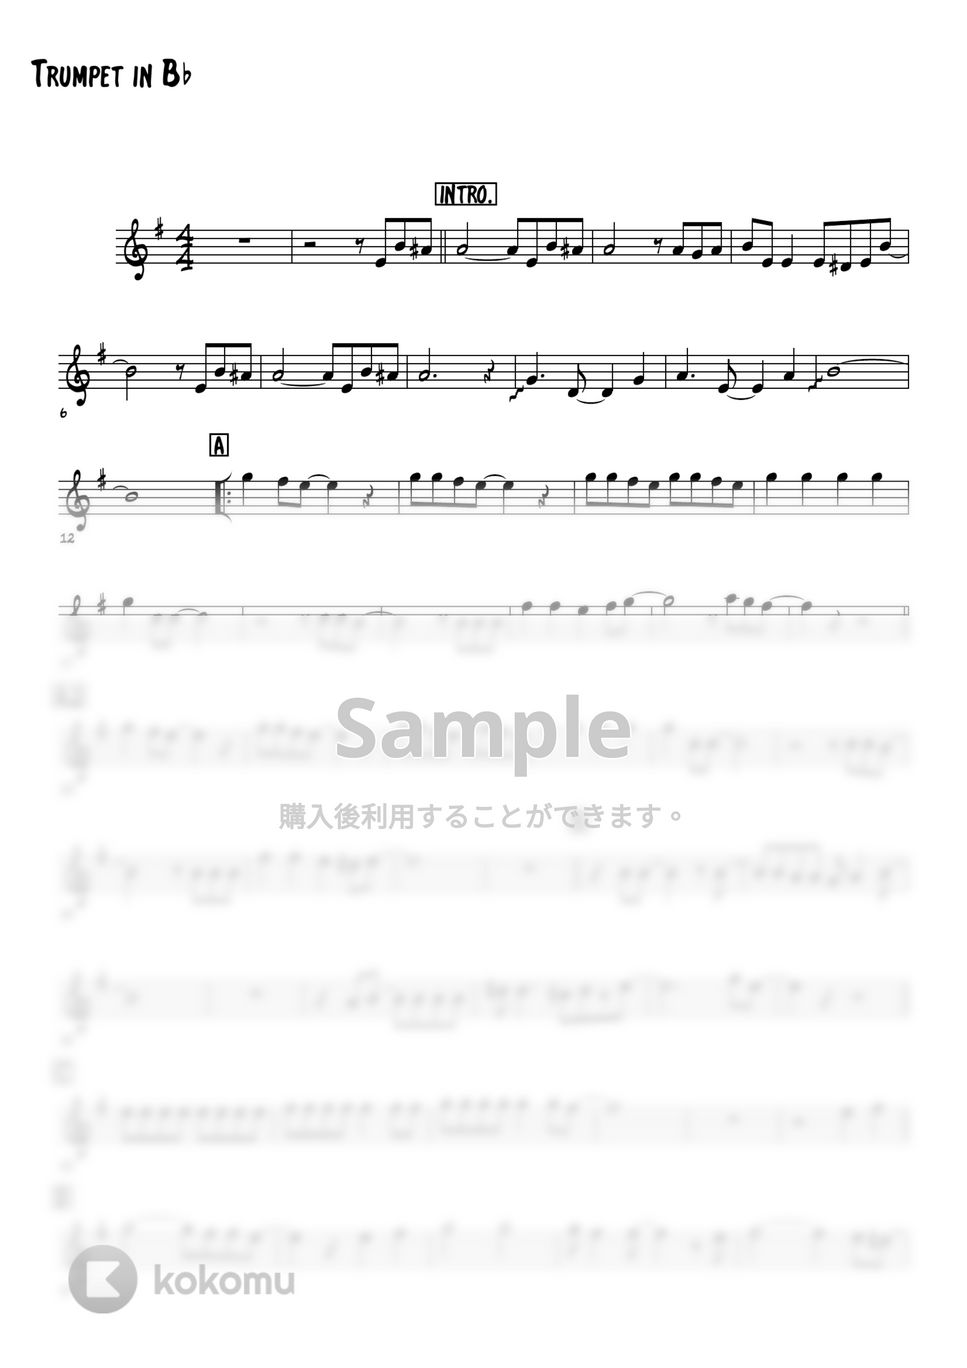 チェッカーズ - ジュリアに傷心 (メロディー楽譜) by 高田将利